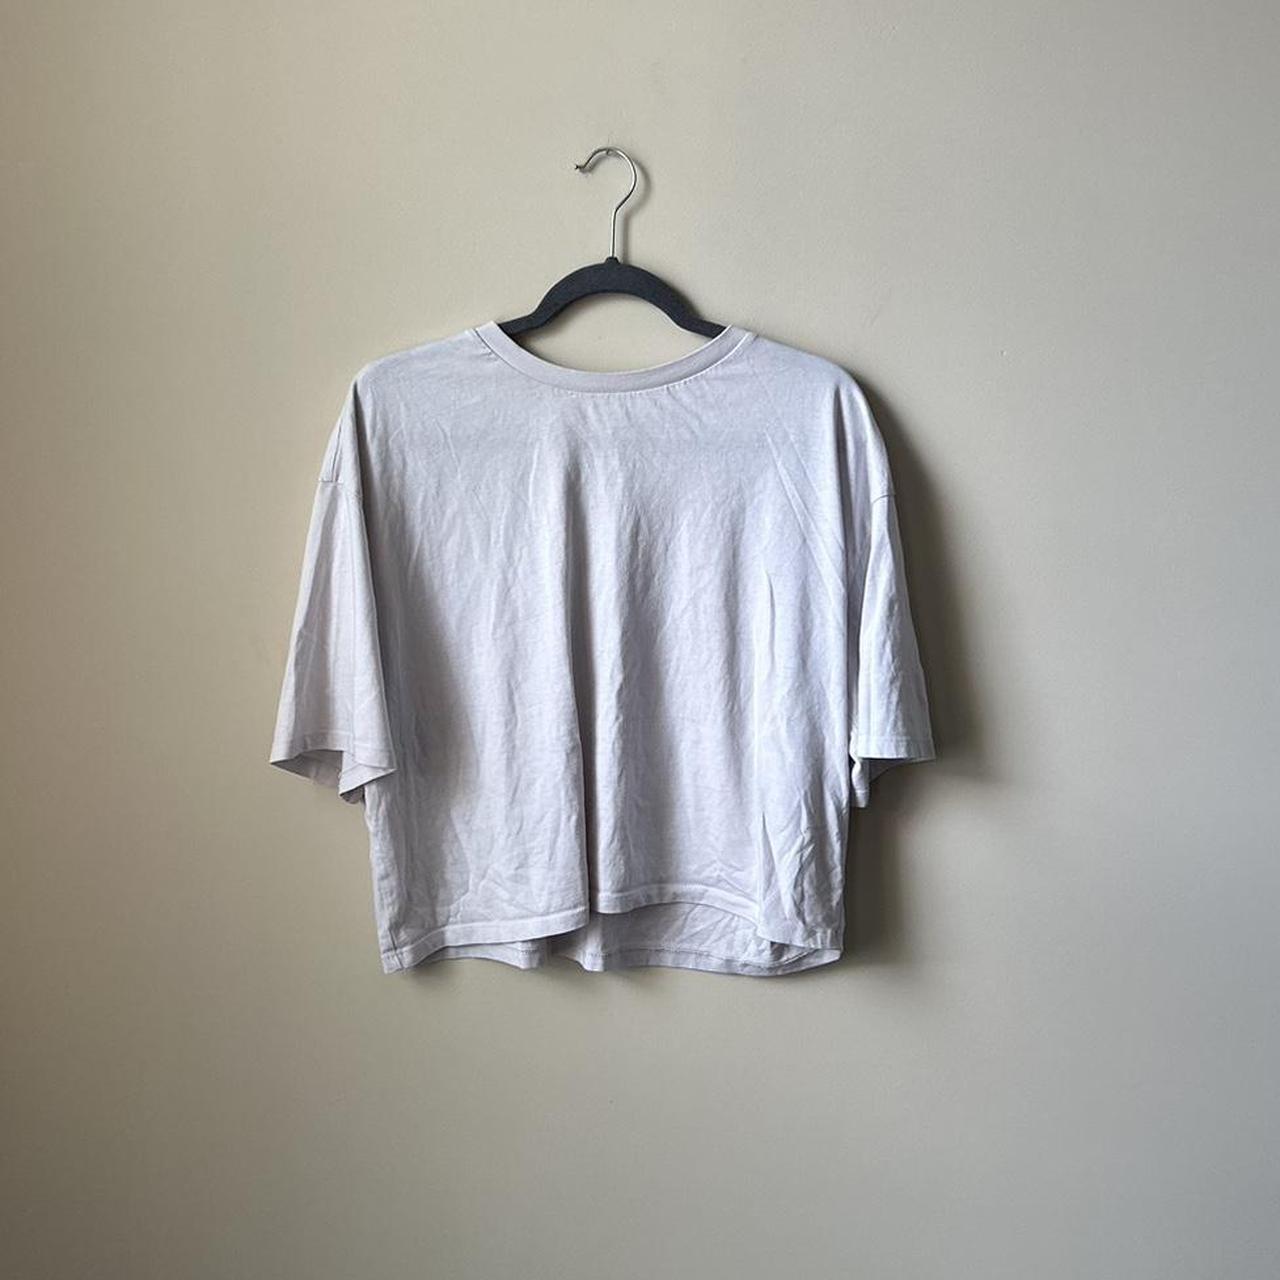 BP Women's Cream and White T-shirt (2)